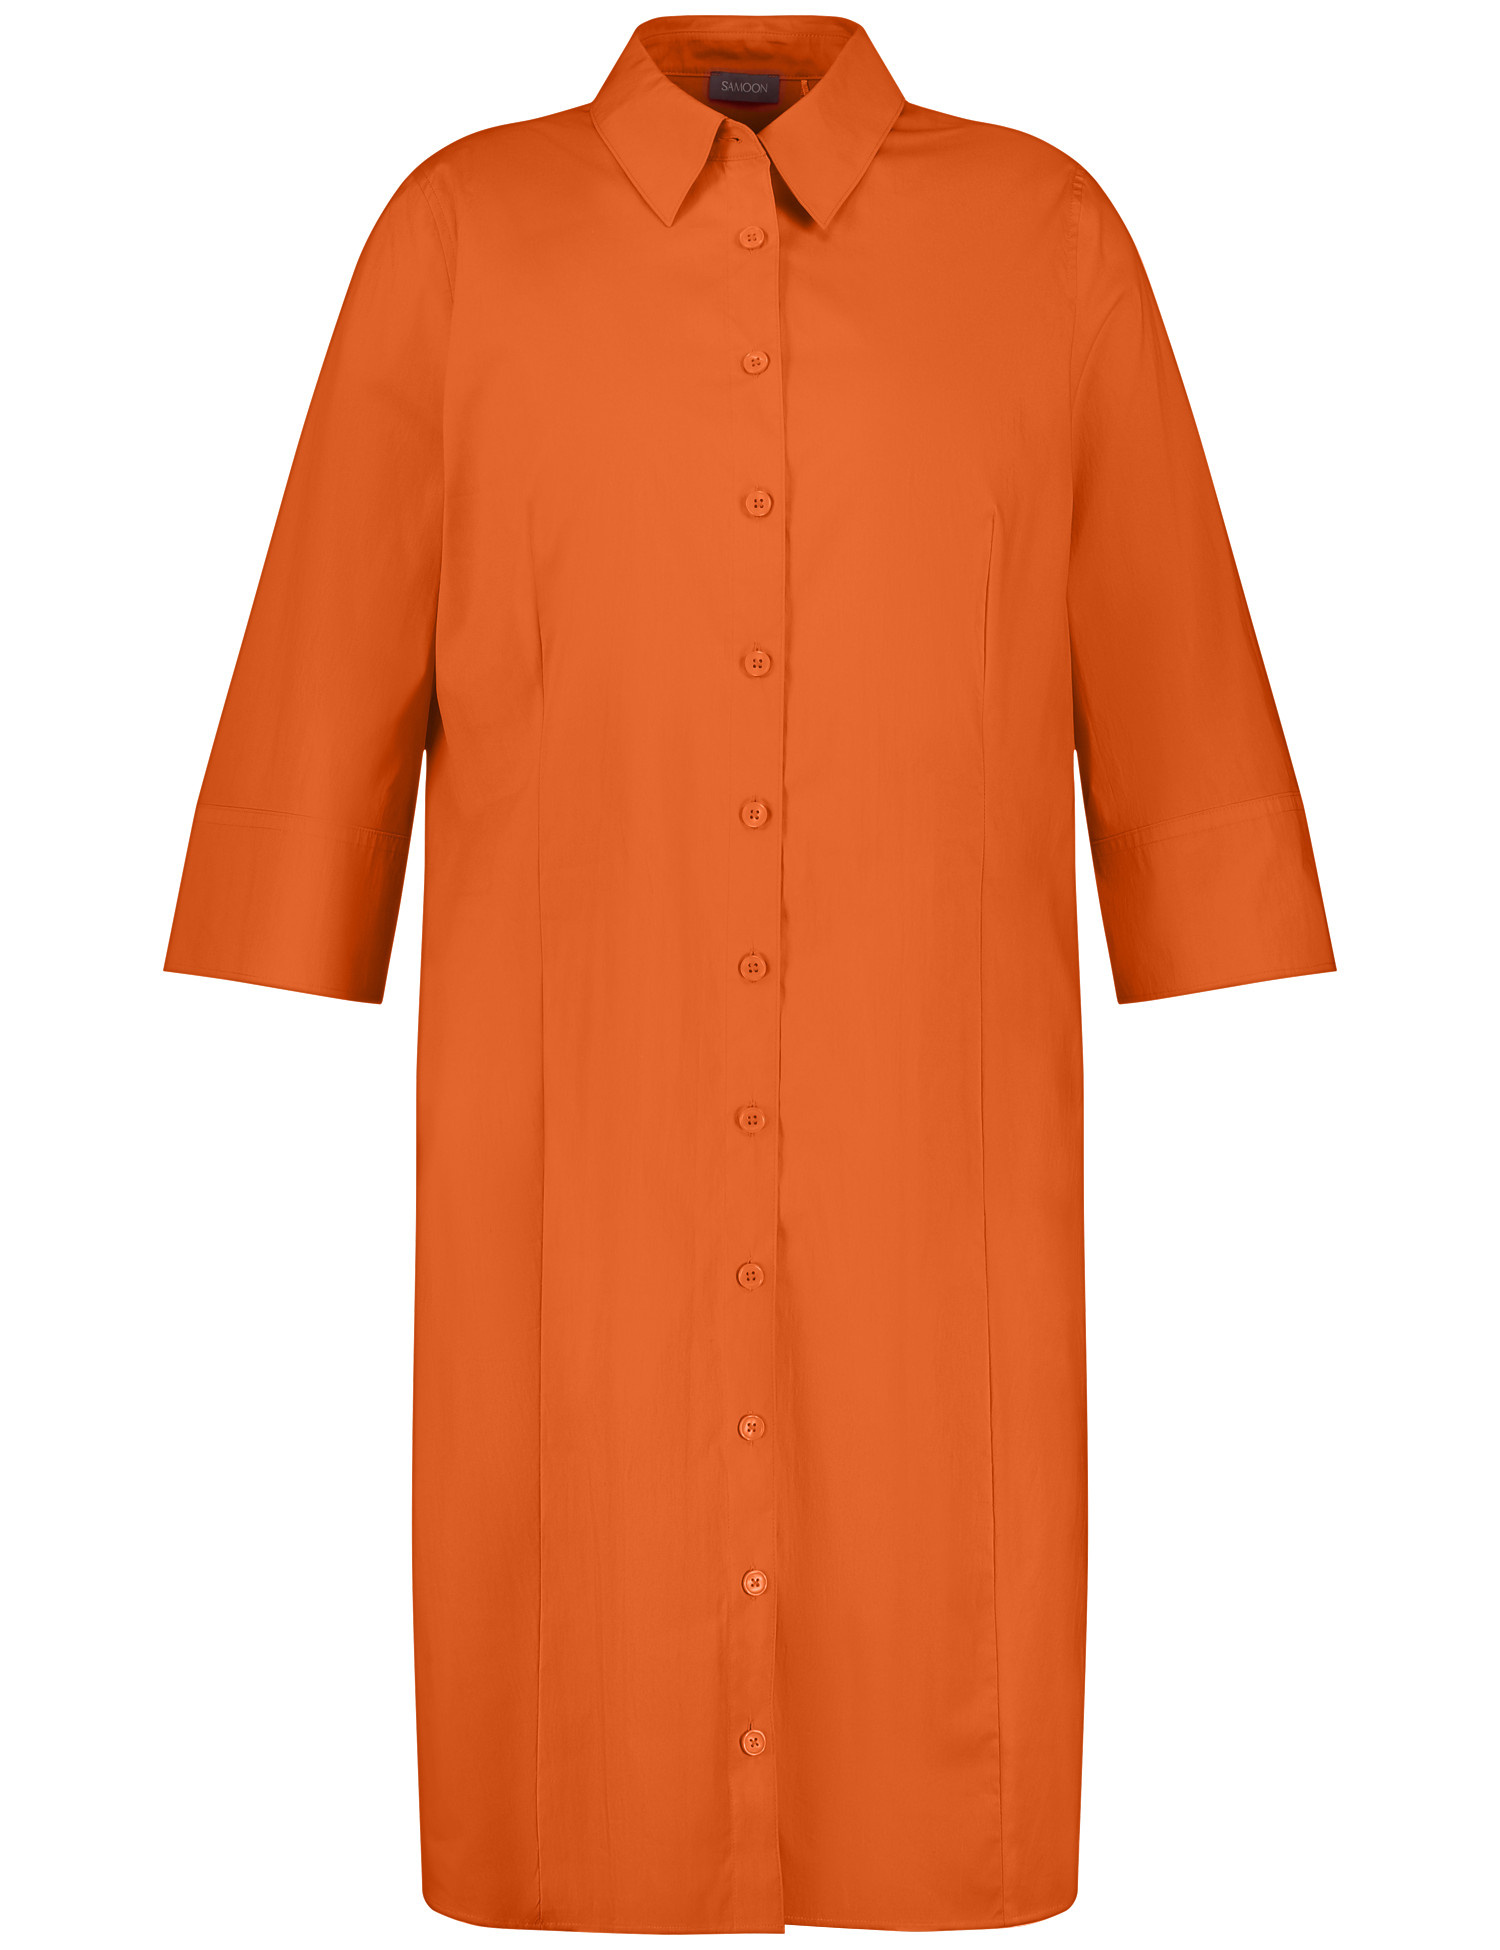 SAMOON Damen Blusenkleid mit 3/4 Arm und Taschen Hemdkragen Baumwolle Orange, 50 von SAMOON